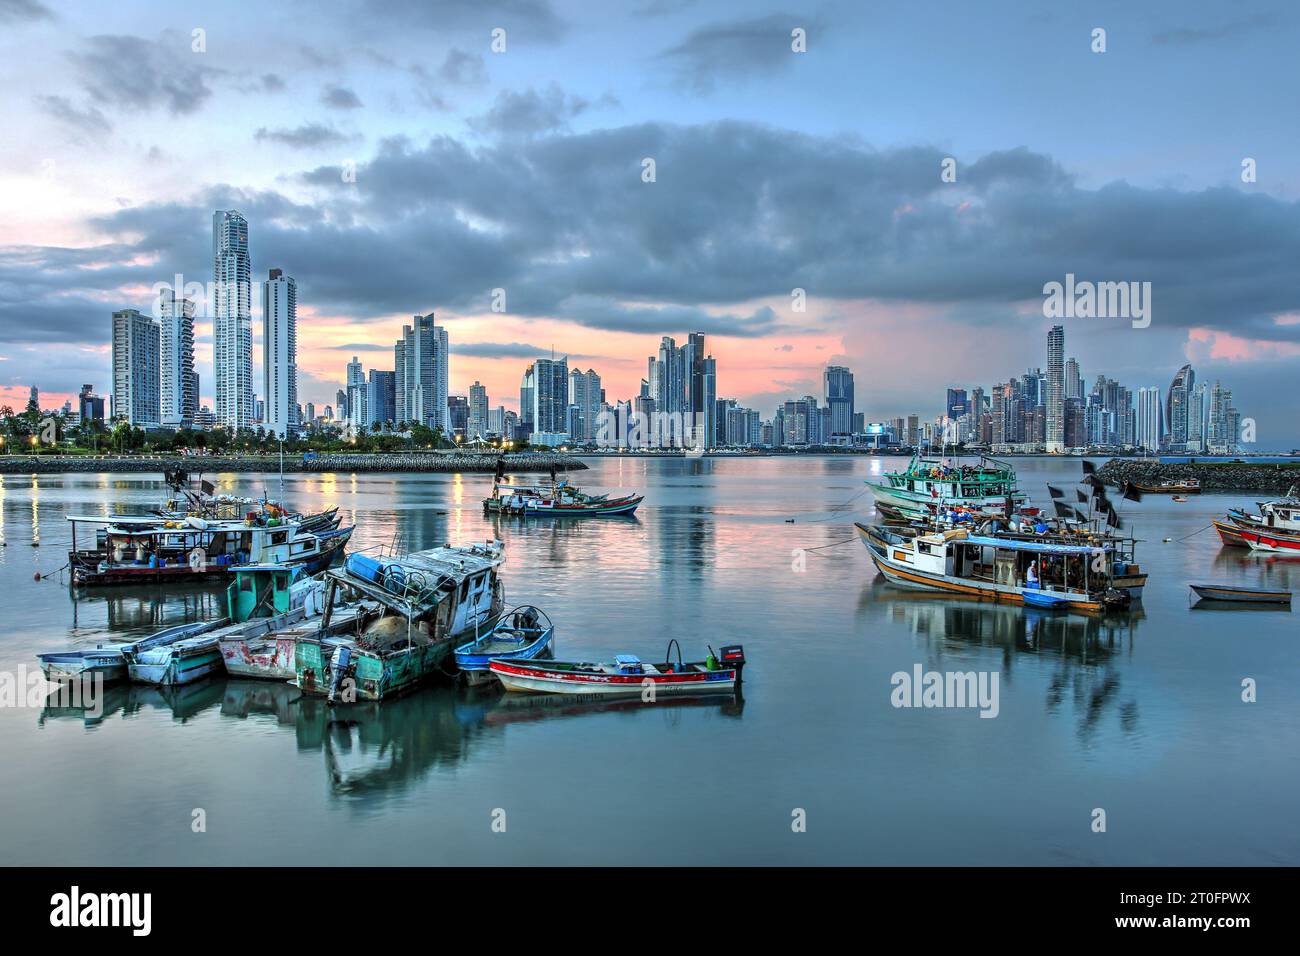 Skyline futuriste de la ville de Panama au coucher du soleil avec des bateaux de pêche au premier plan reflétant dans l'eau calme. Banque D'Images